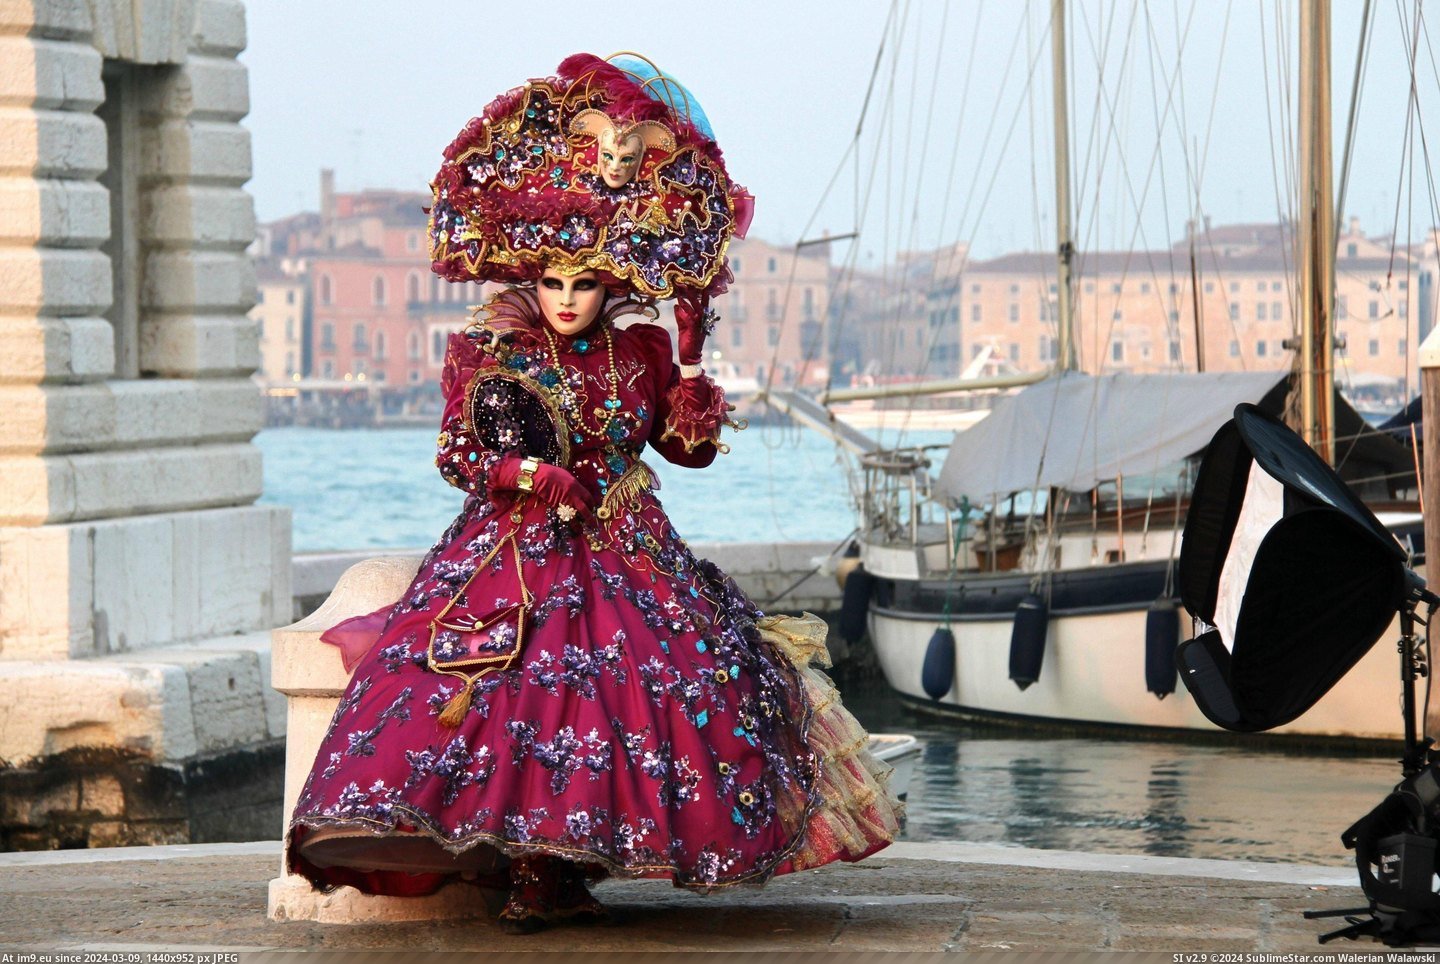 #Costume #Carnival #Venice [Pics] Venice Carnival Costume Pic. (Image of album My r/PICS favs))